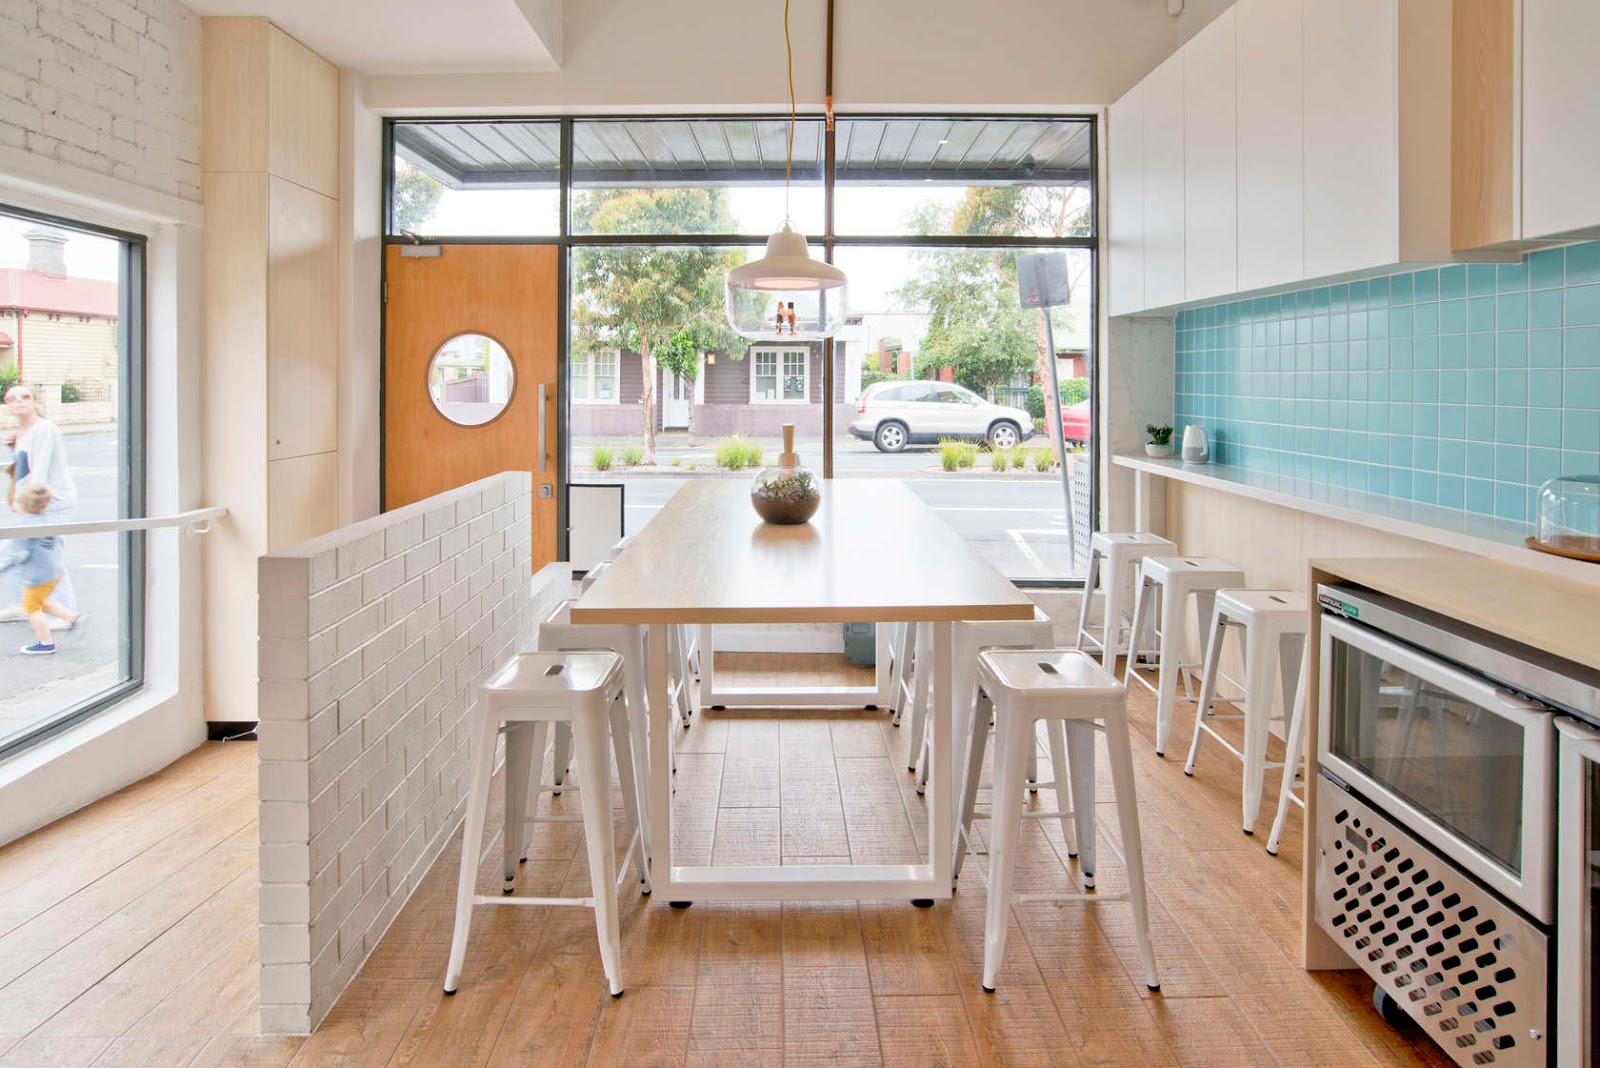  Desain  Interior  Cafe  Rumahan Desain  Rumah Minimalis 